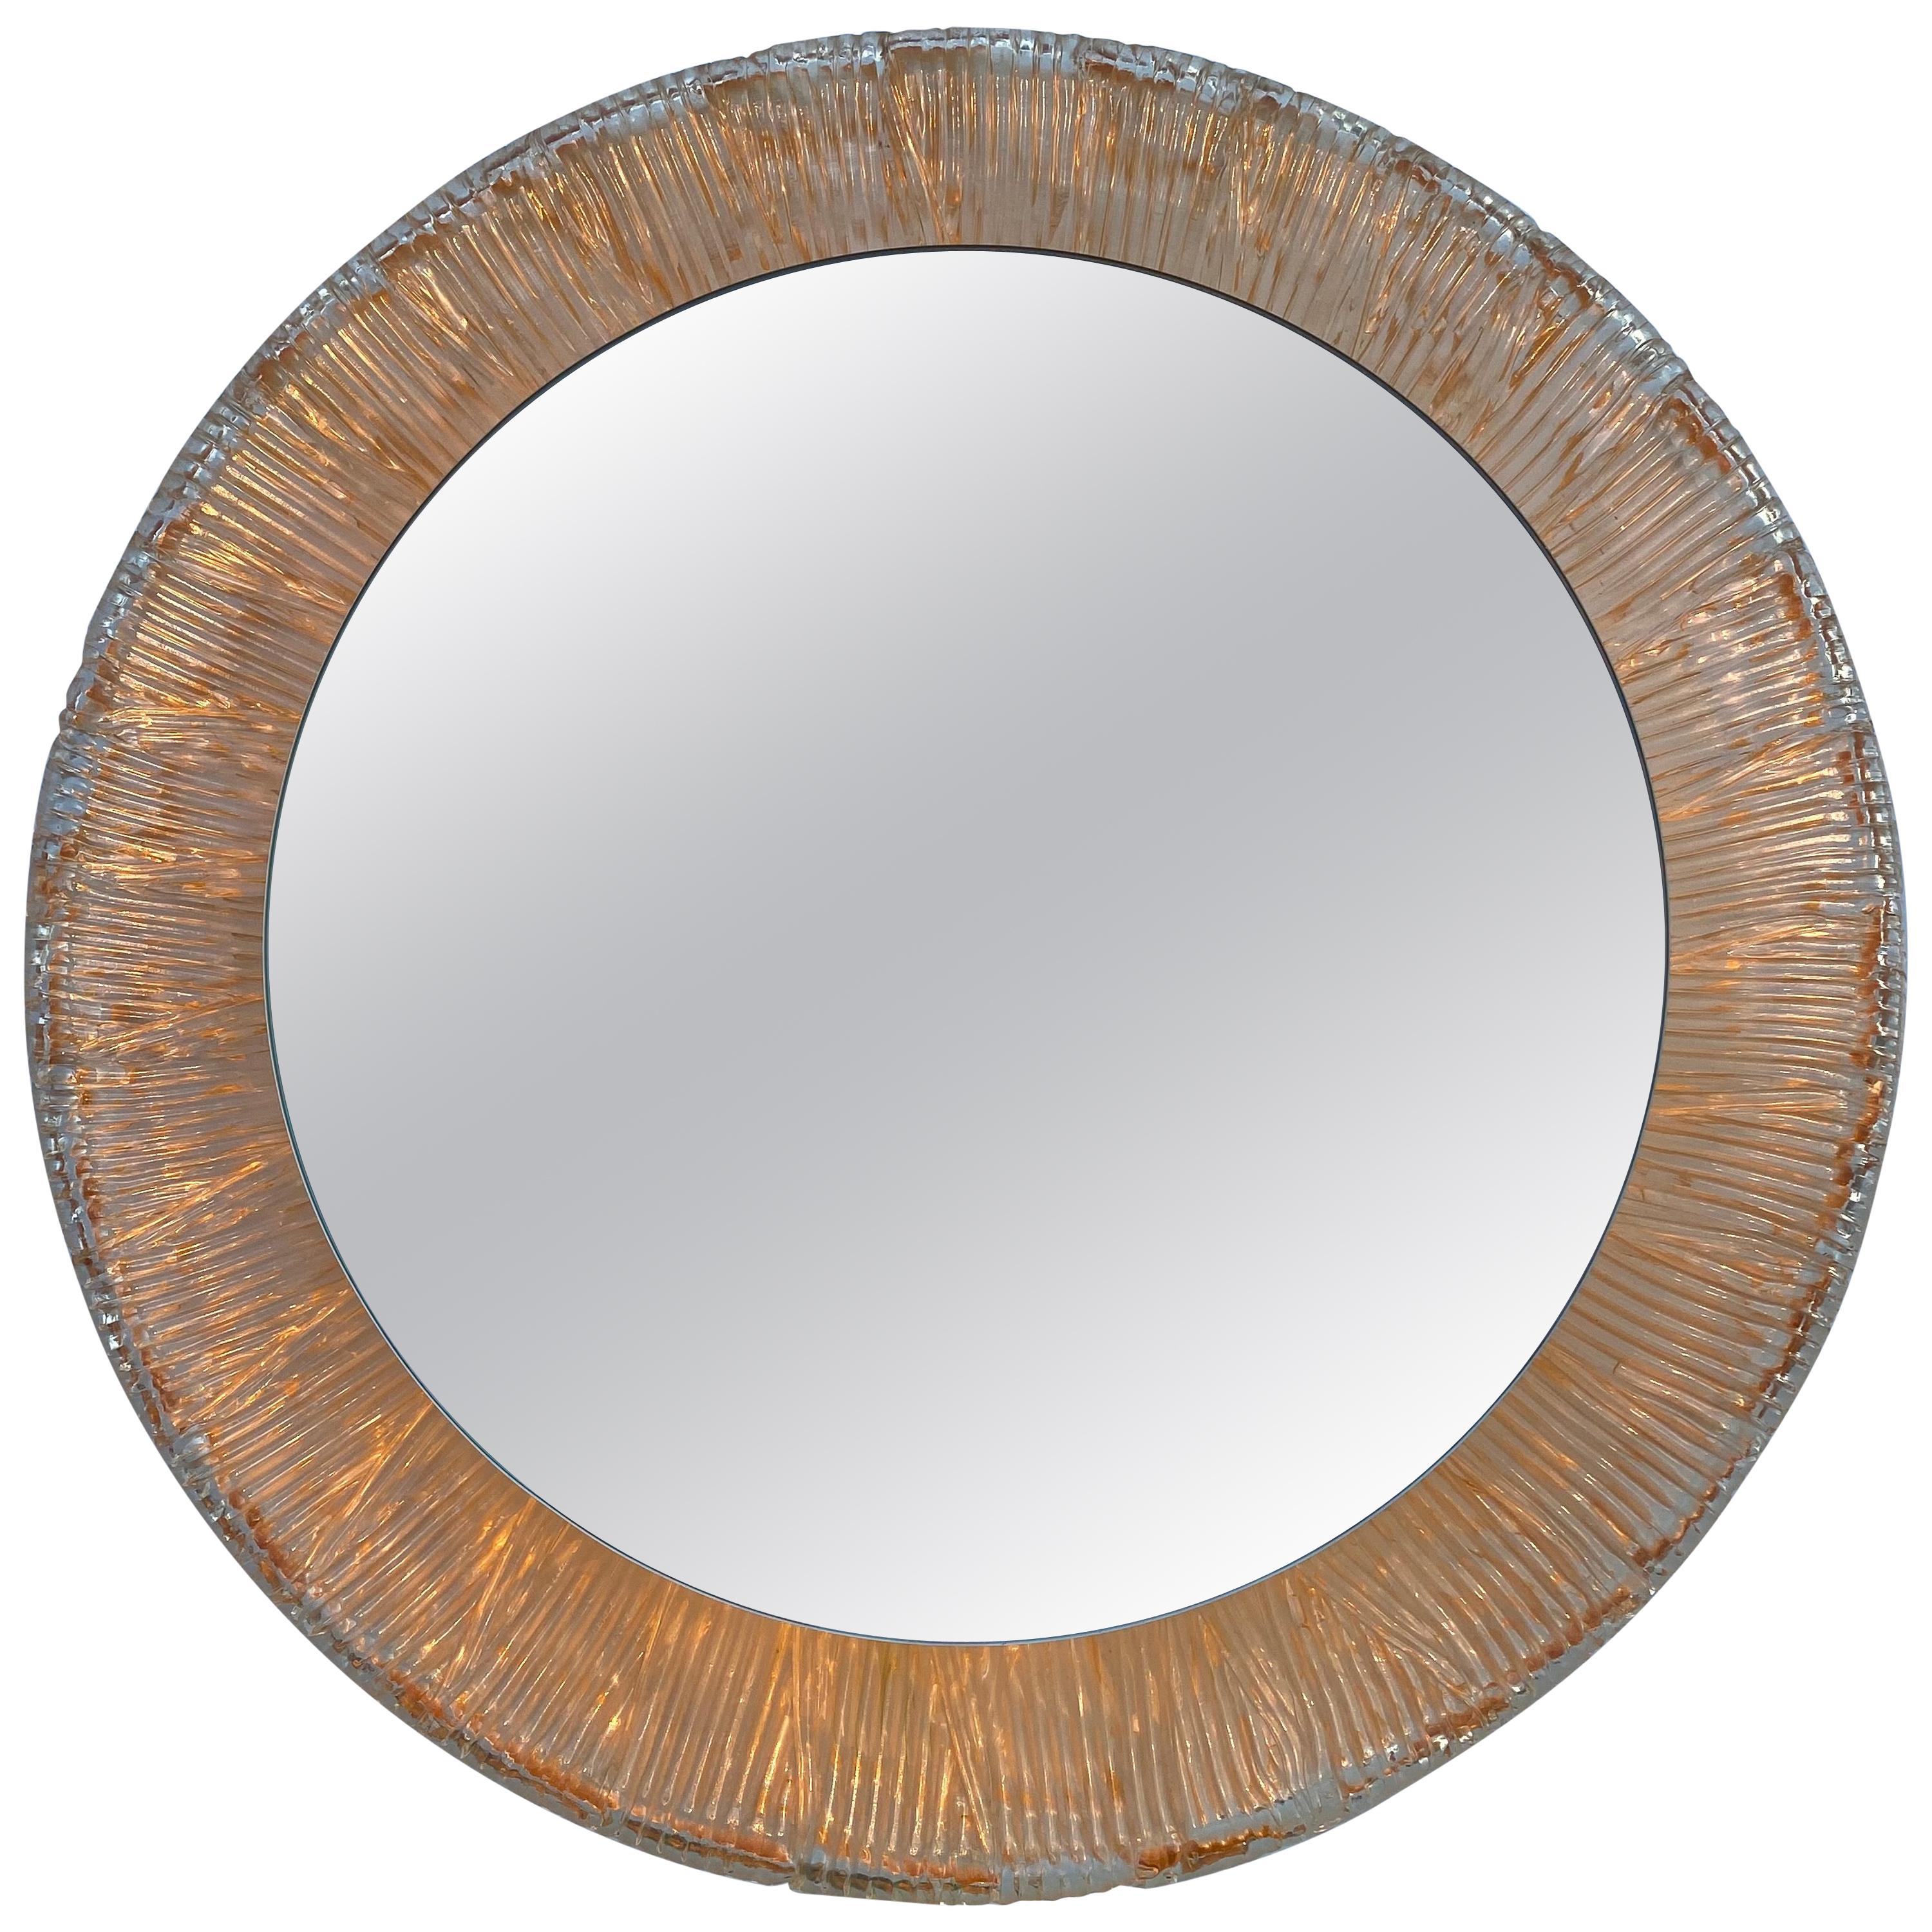 Illuminated Round Acrylic Mirror